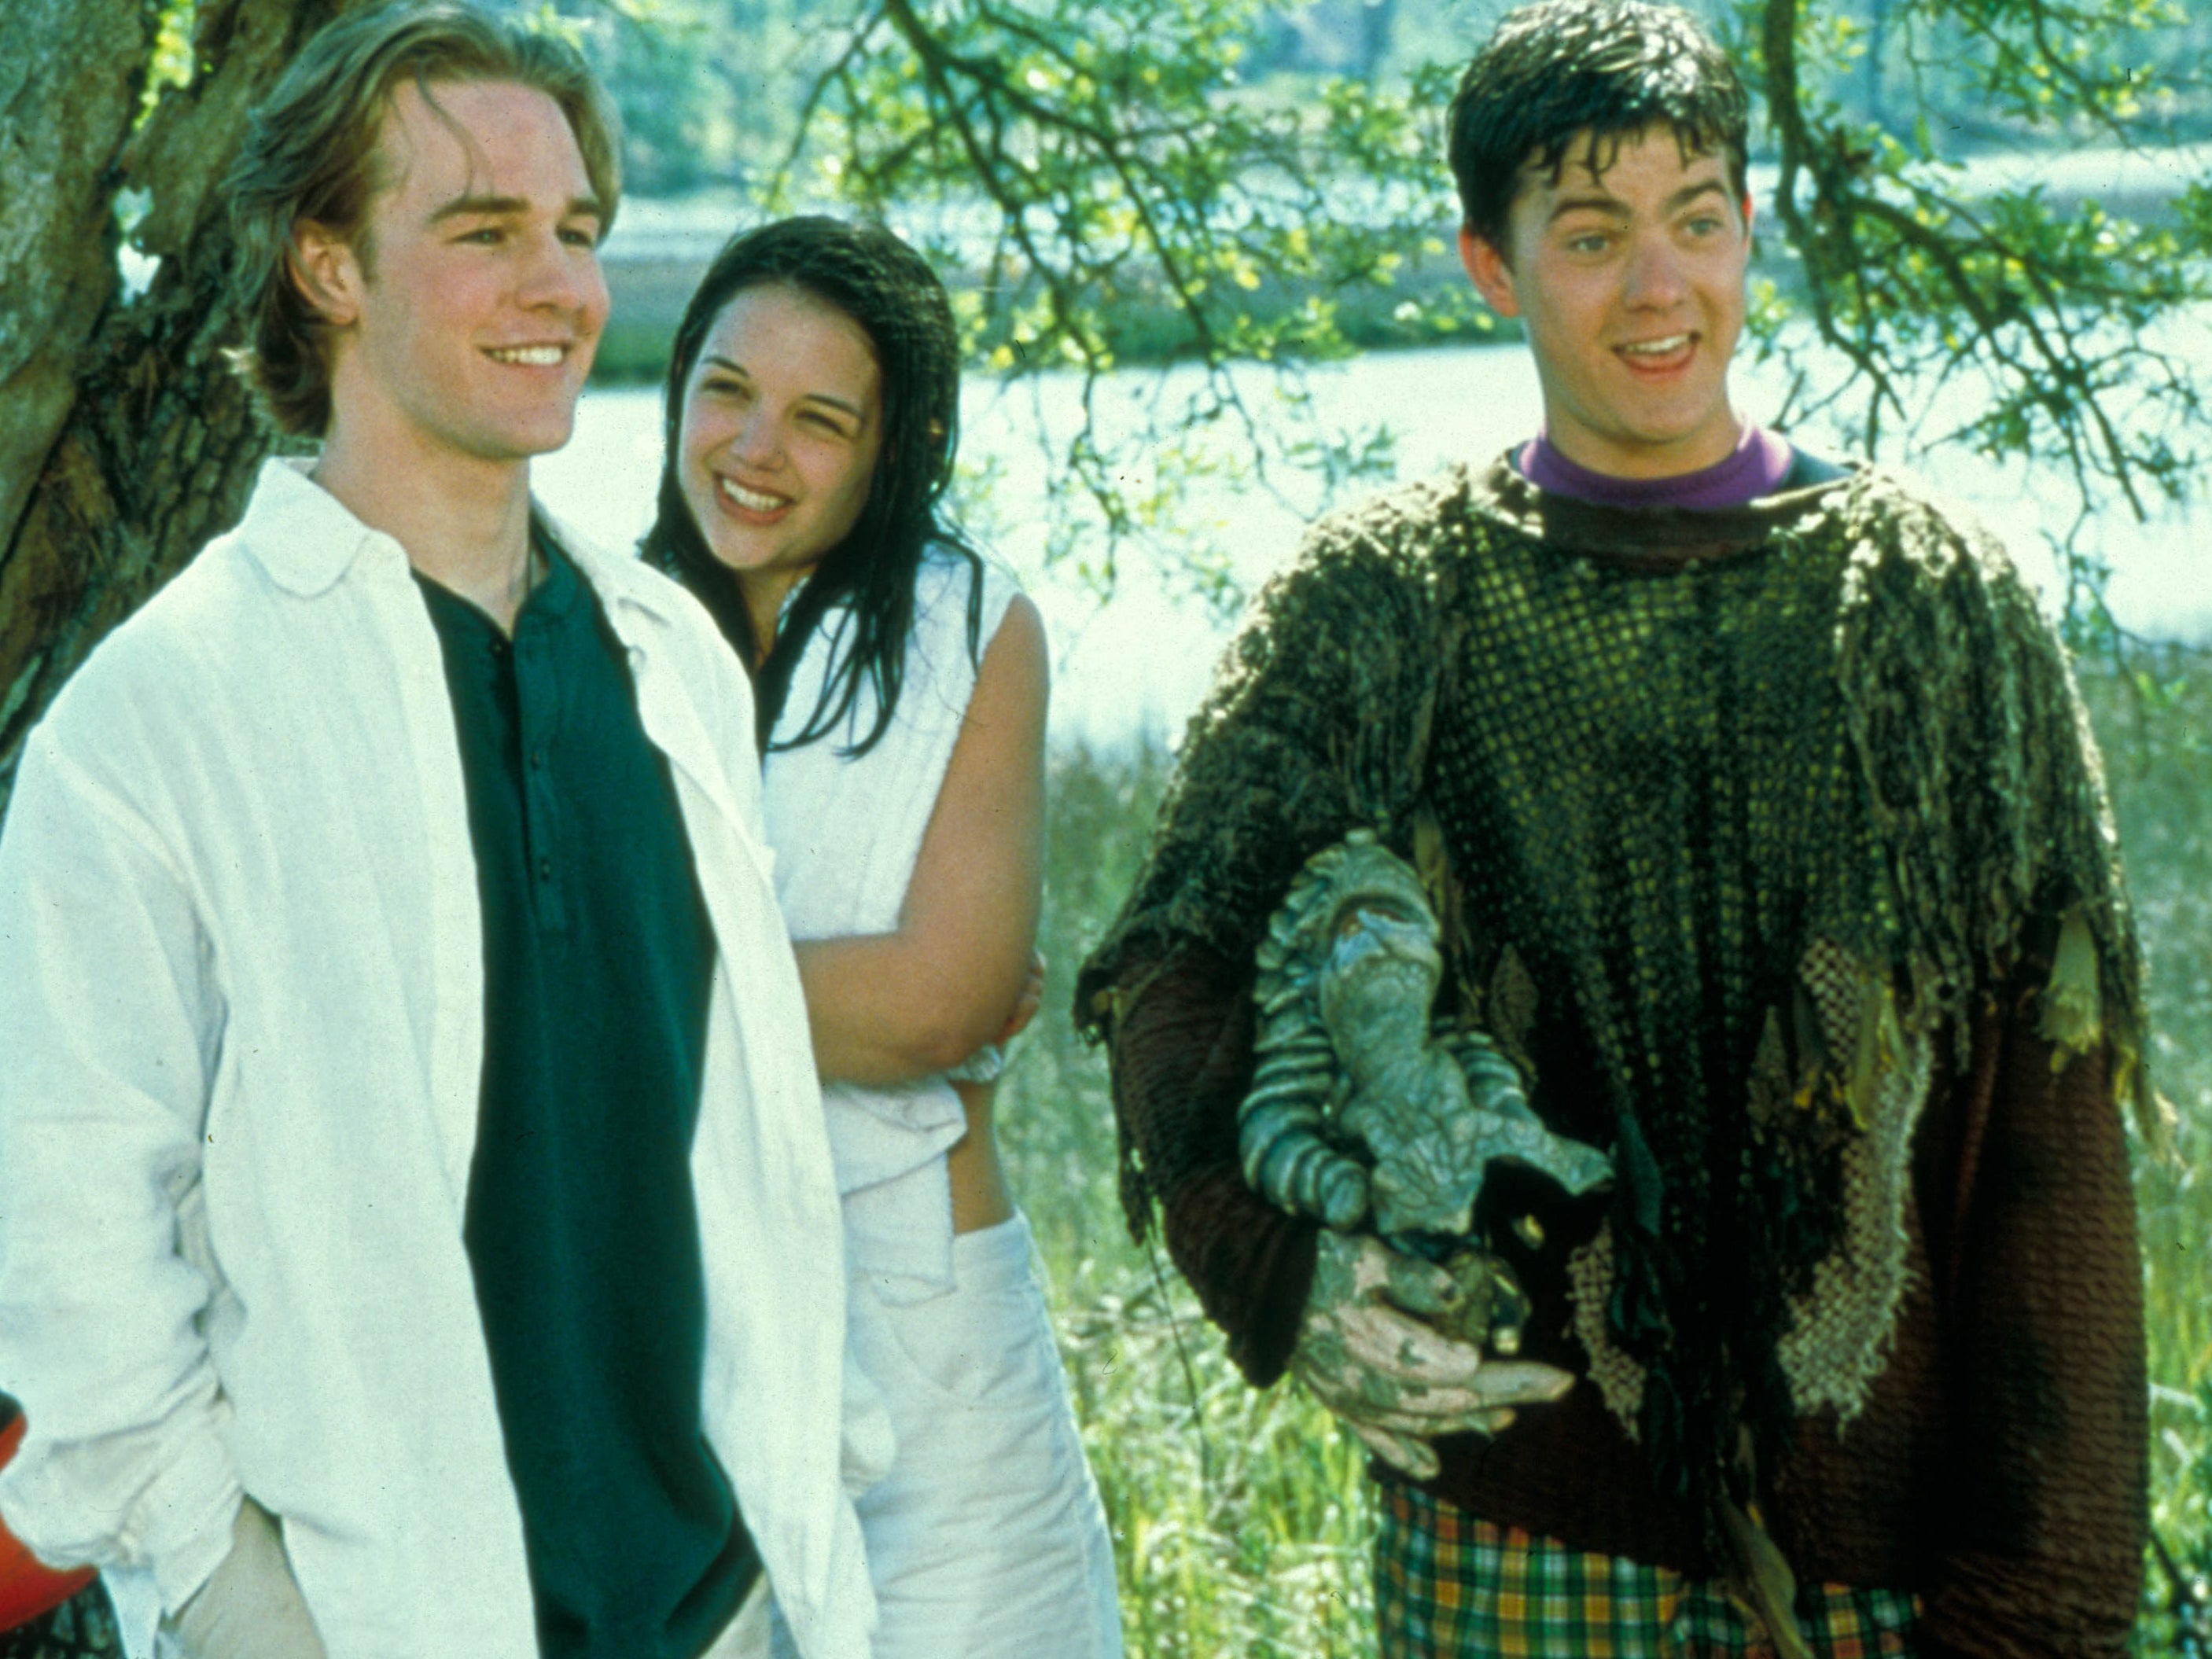 James Van Der Beek, Katie Holmes, and Joshua Jackson (1998)